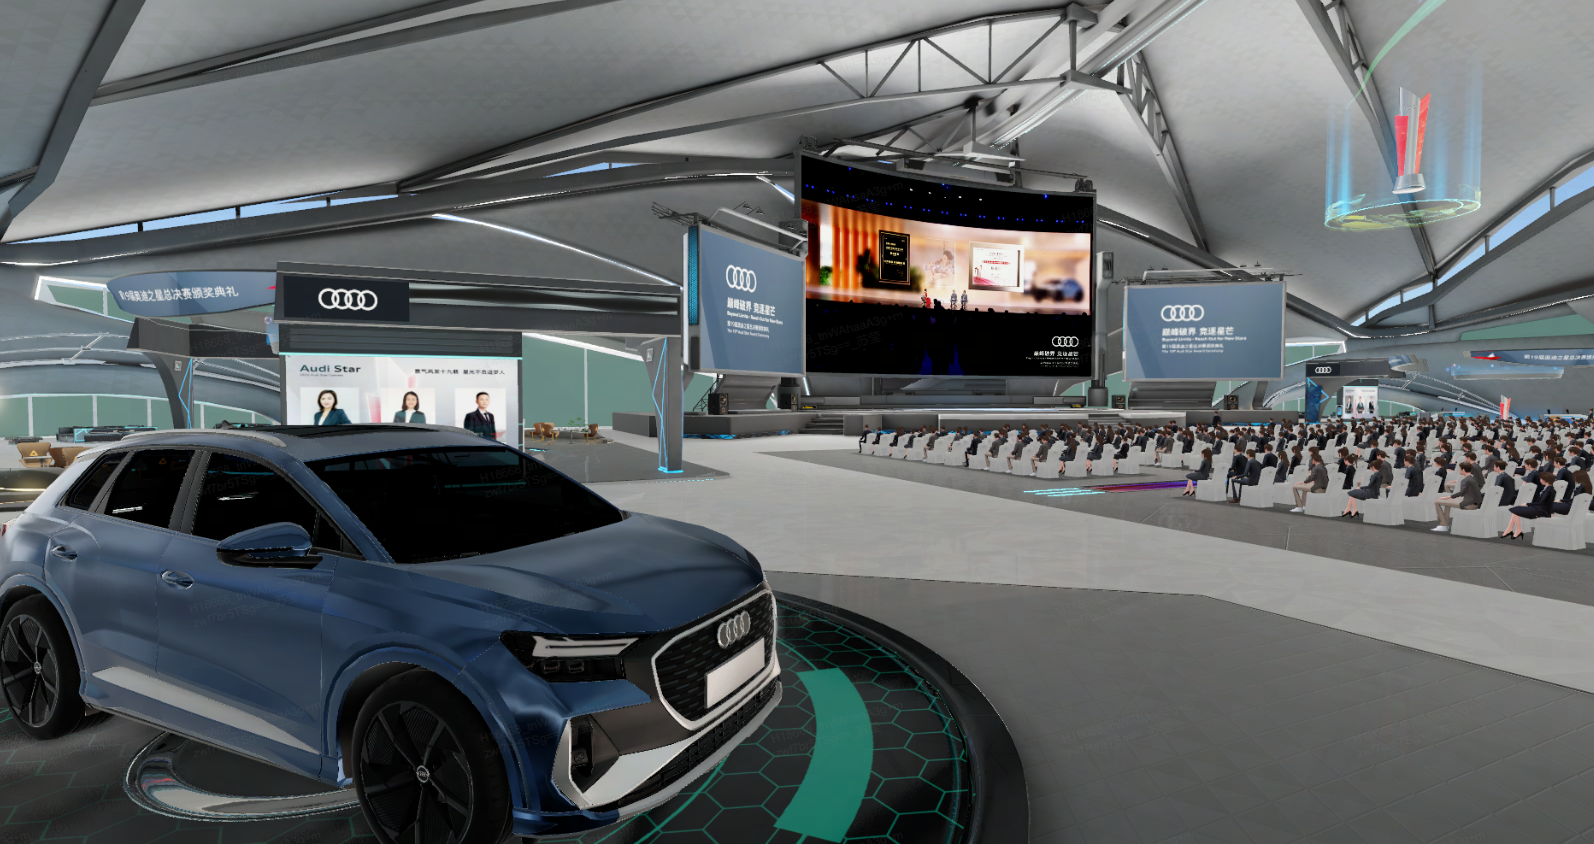 图片展示了一场室内活动，中心有一辆蓝色奥迪汽车，背景是大屏幕和坐满人的听众席，环境现代科技感强。